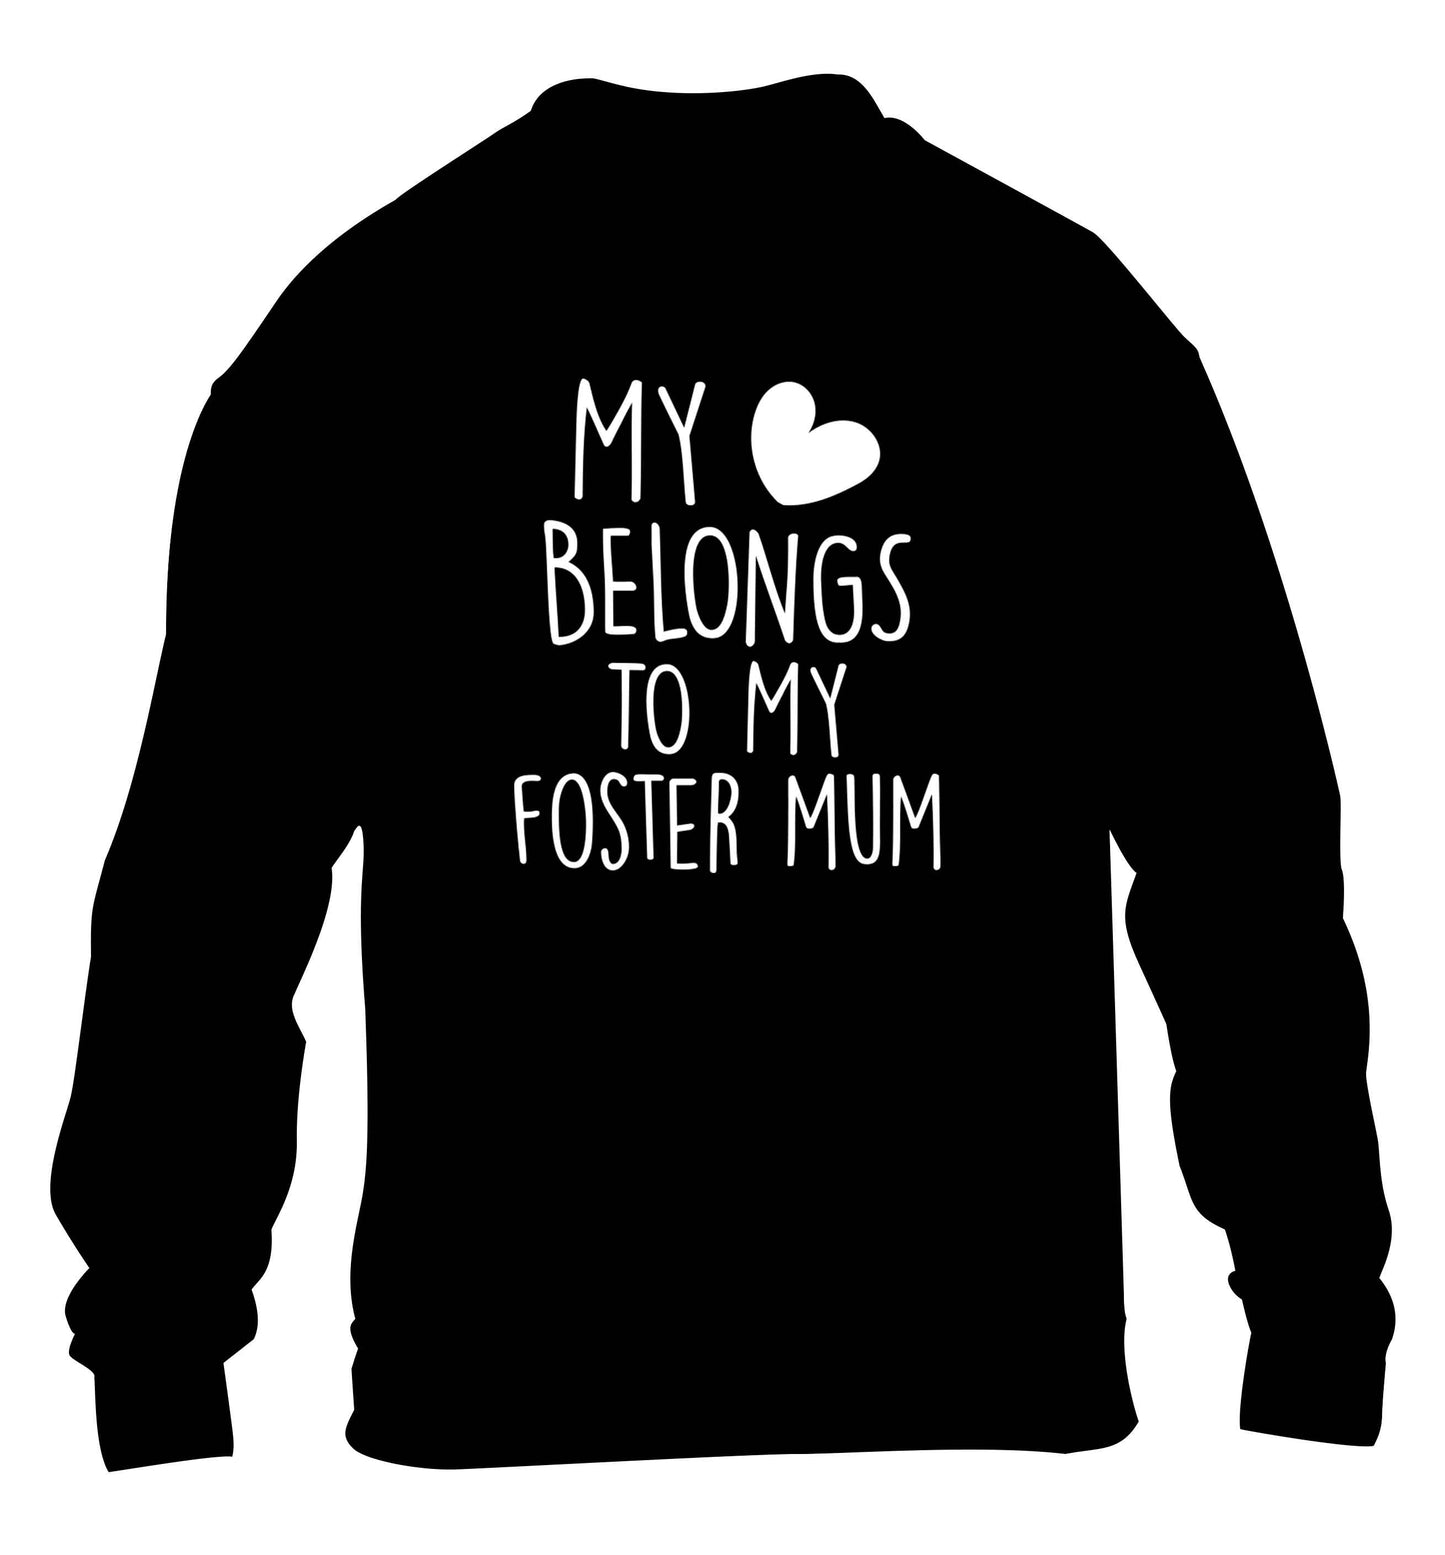 My heart belongs to my foster mum children's black sweater 12-13 Years